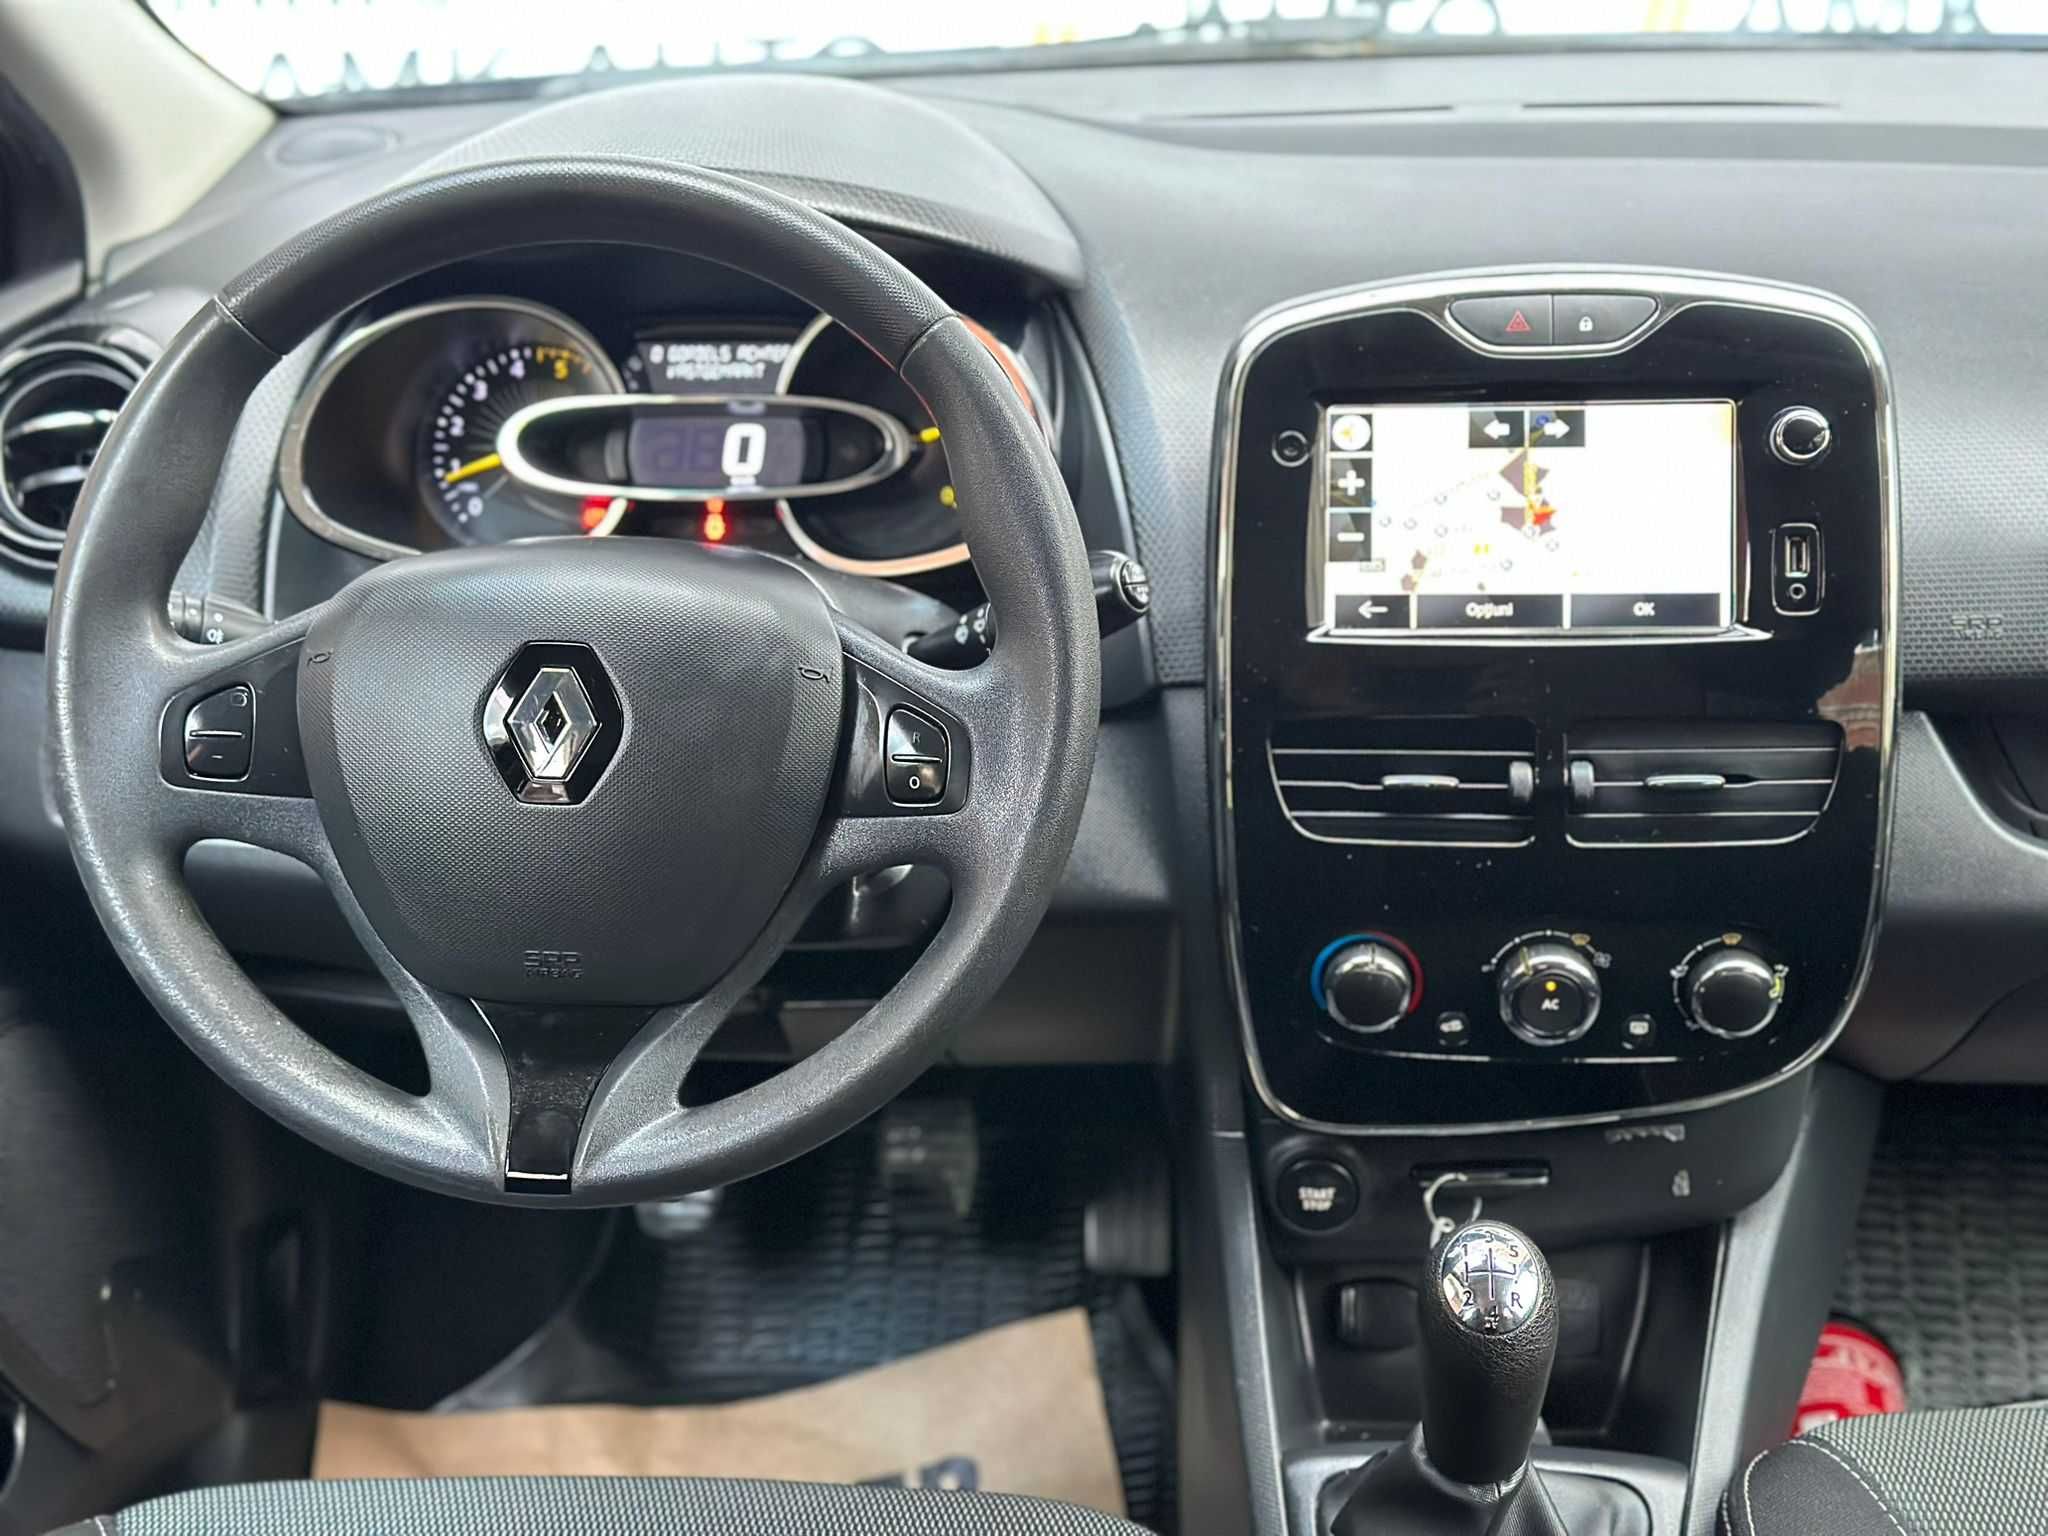 Renault Clio-2014-1.5 diesel-Euro5-Posibilitate Rate